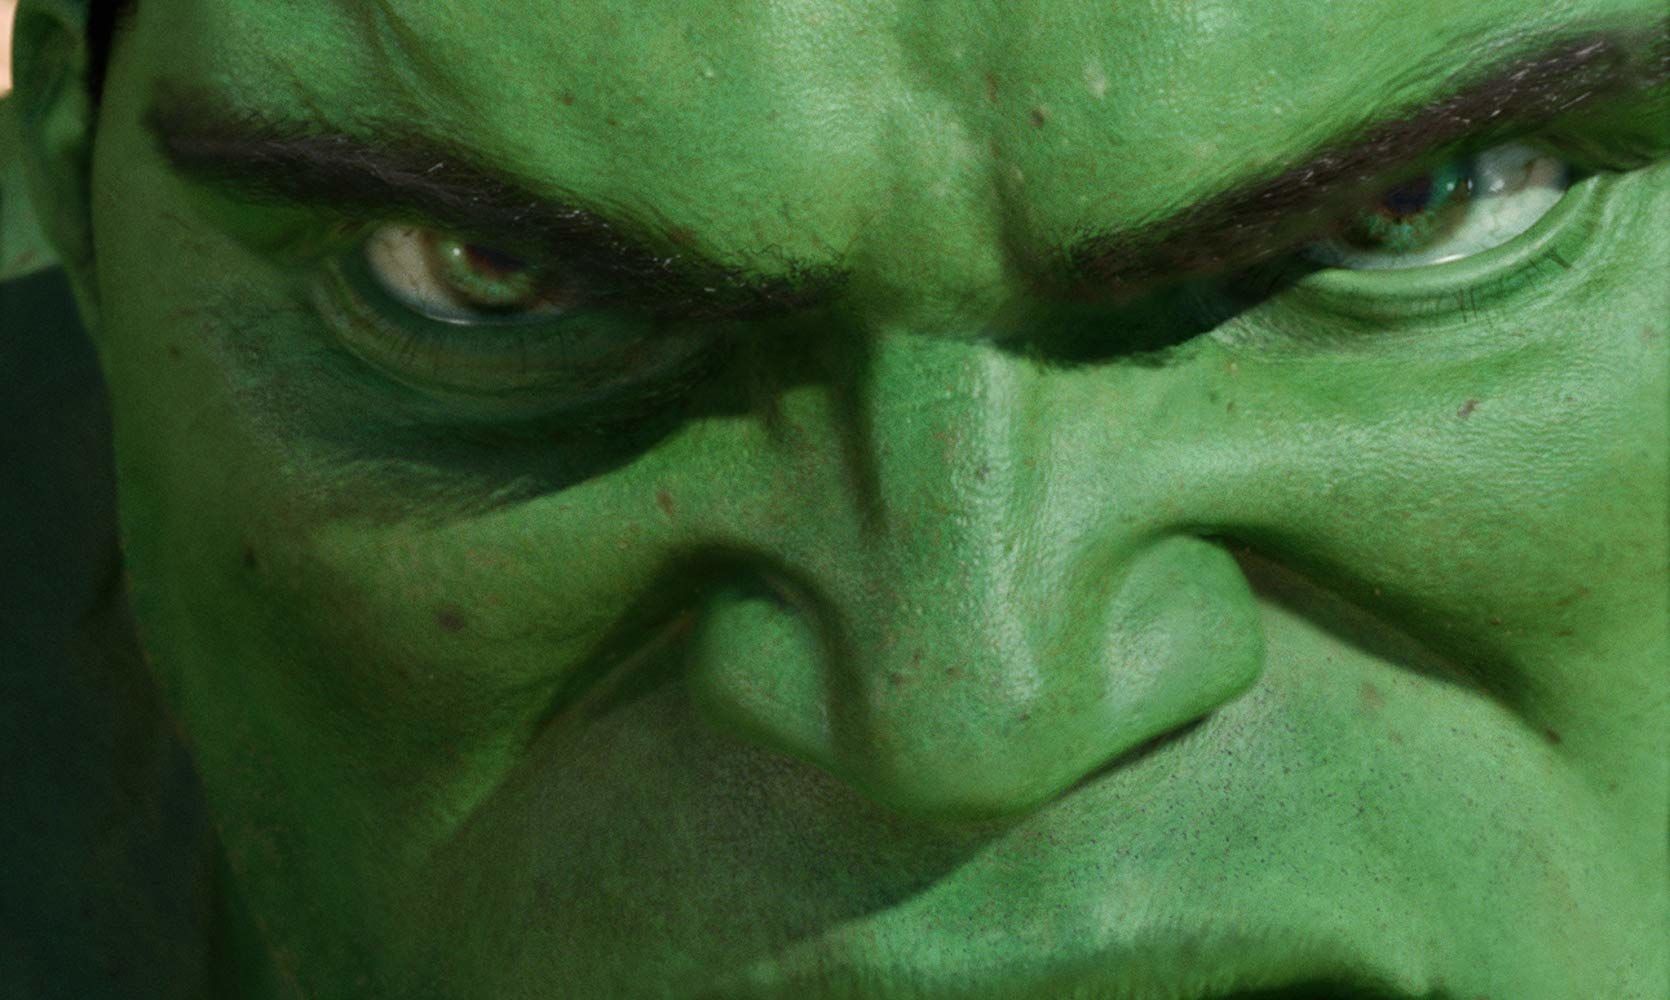 Ang Lee's Hulk 2003